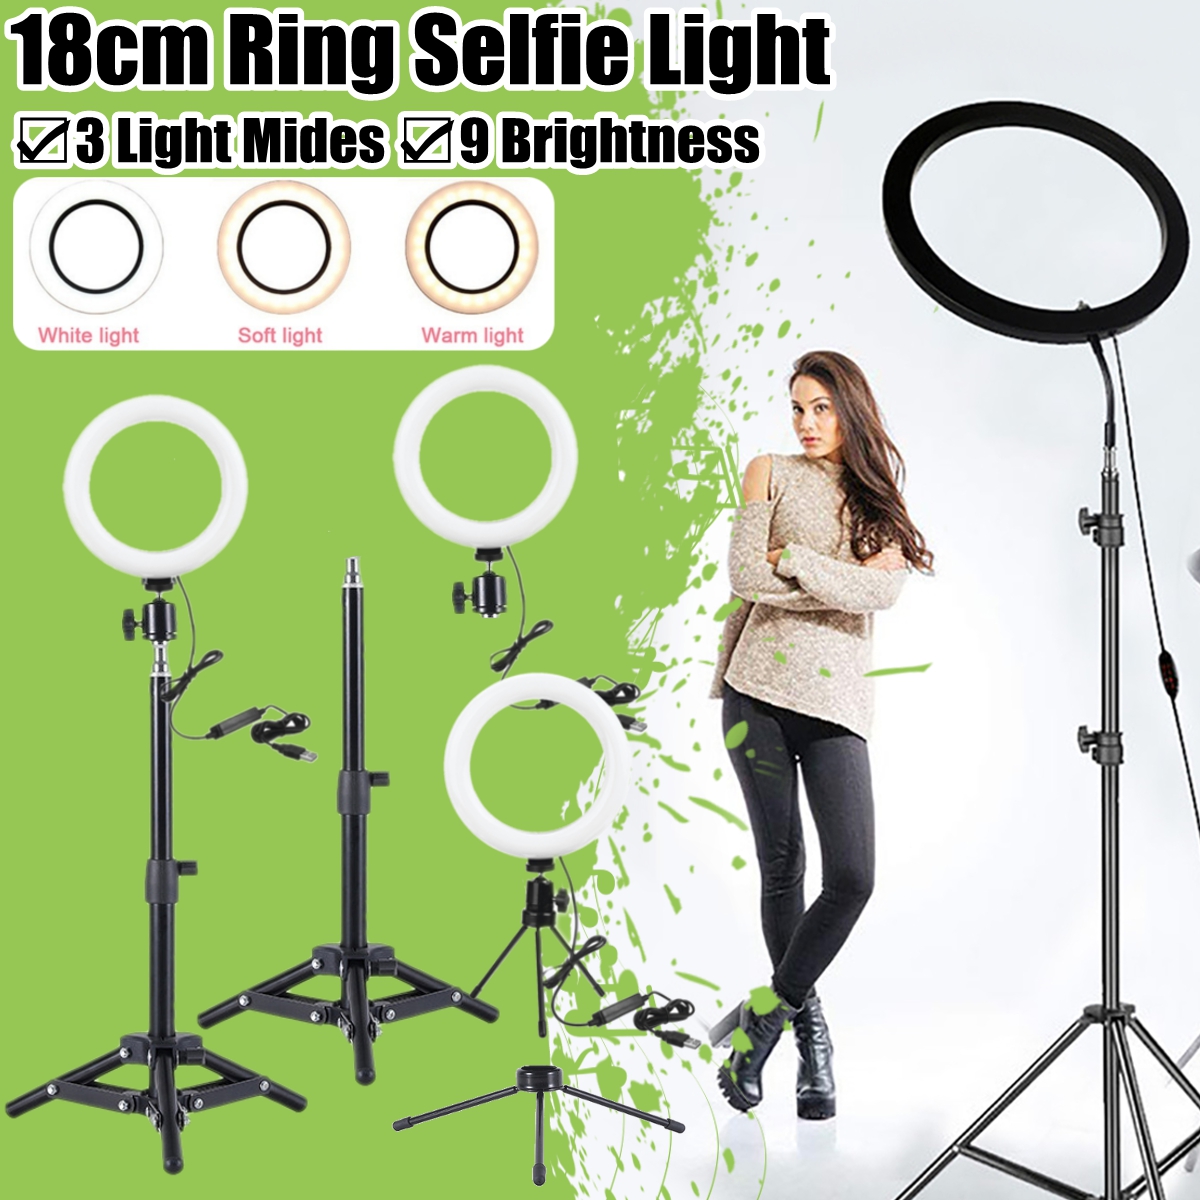 3 Light Modes 9 Brightness 7 inch LED Ring Fill Light LED Ring Full Light Tripod Stand Live Selfie Holder with USB Plug for YouTube Tiktok VK Vlog Makeup